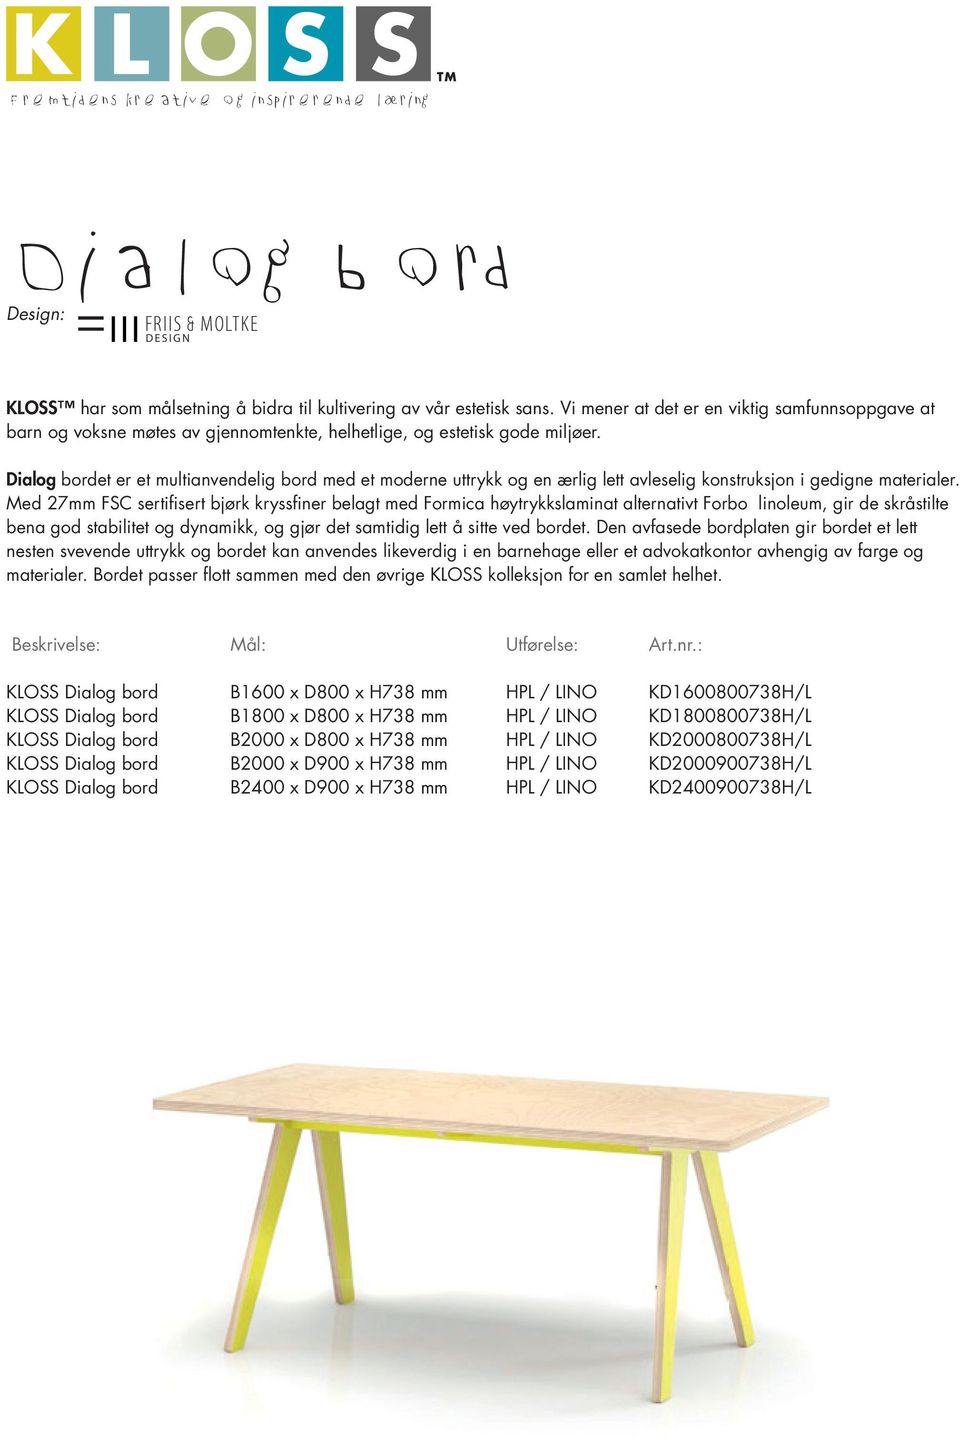 Dialog bordet er et multianvendelig bord med et moderne uttrykk og en ærlig lett avleselig konstruksjon i gedigne materialer.